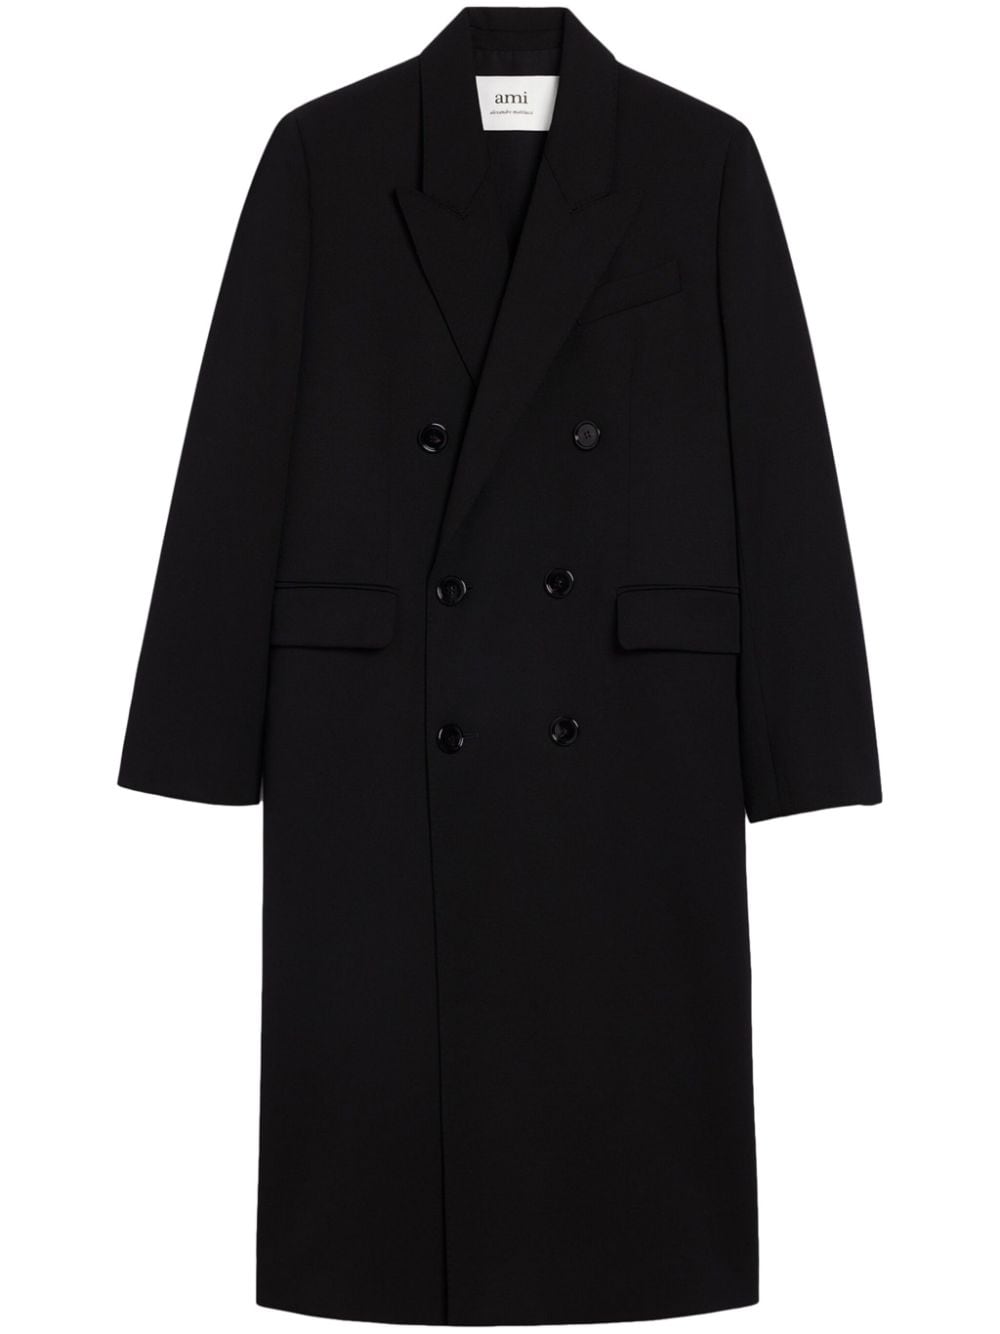 Image 1 of AMI Paris abrigo con doble botonadura